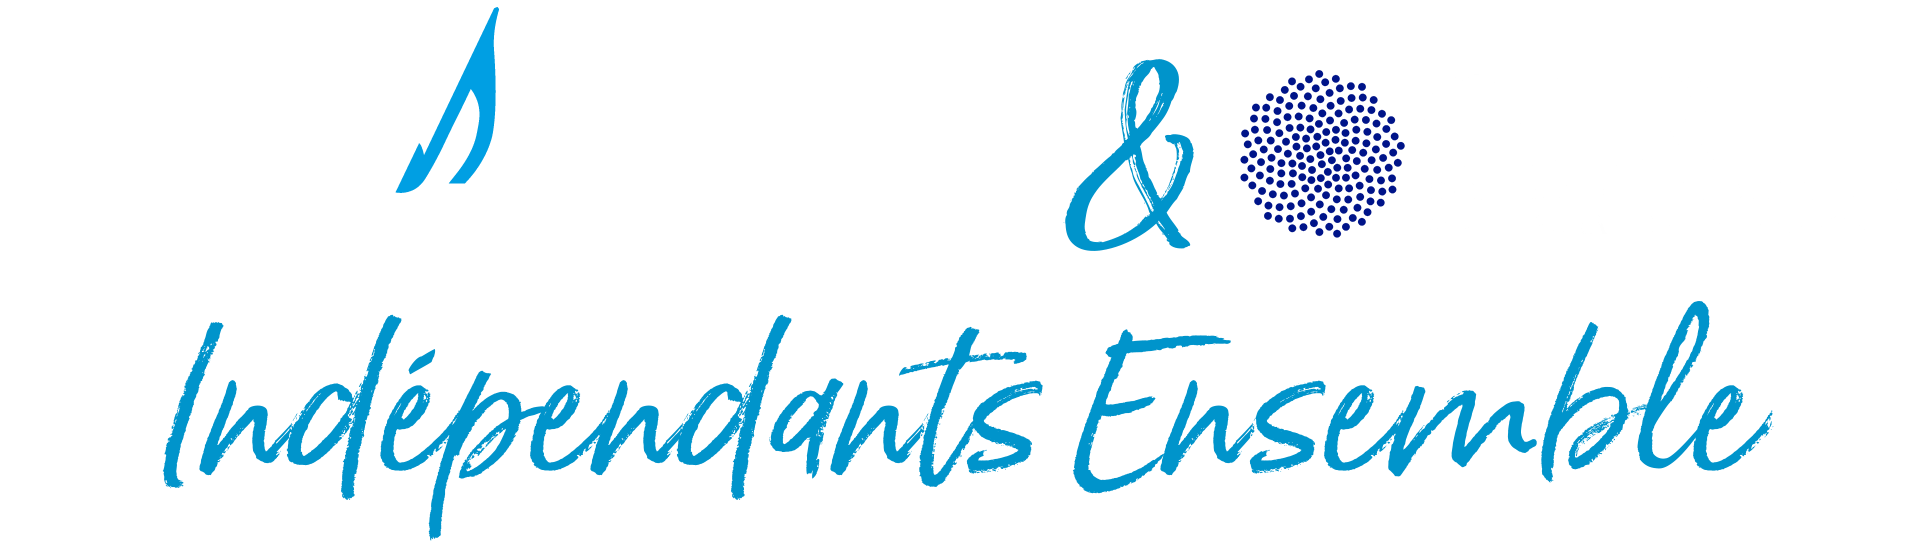 Confederation CID & GNI, Indépendants Ensemble